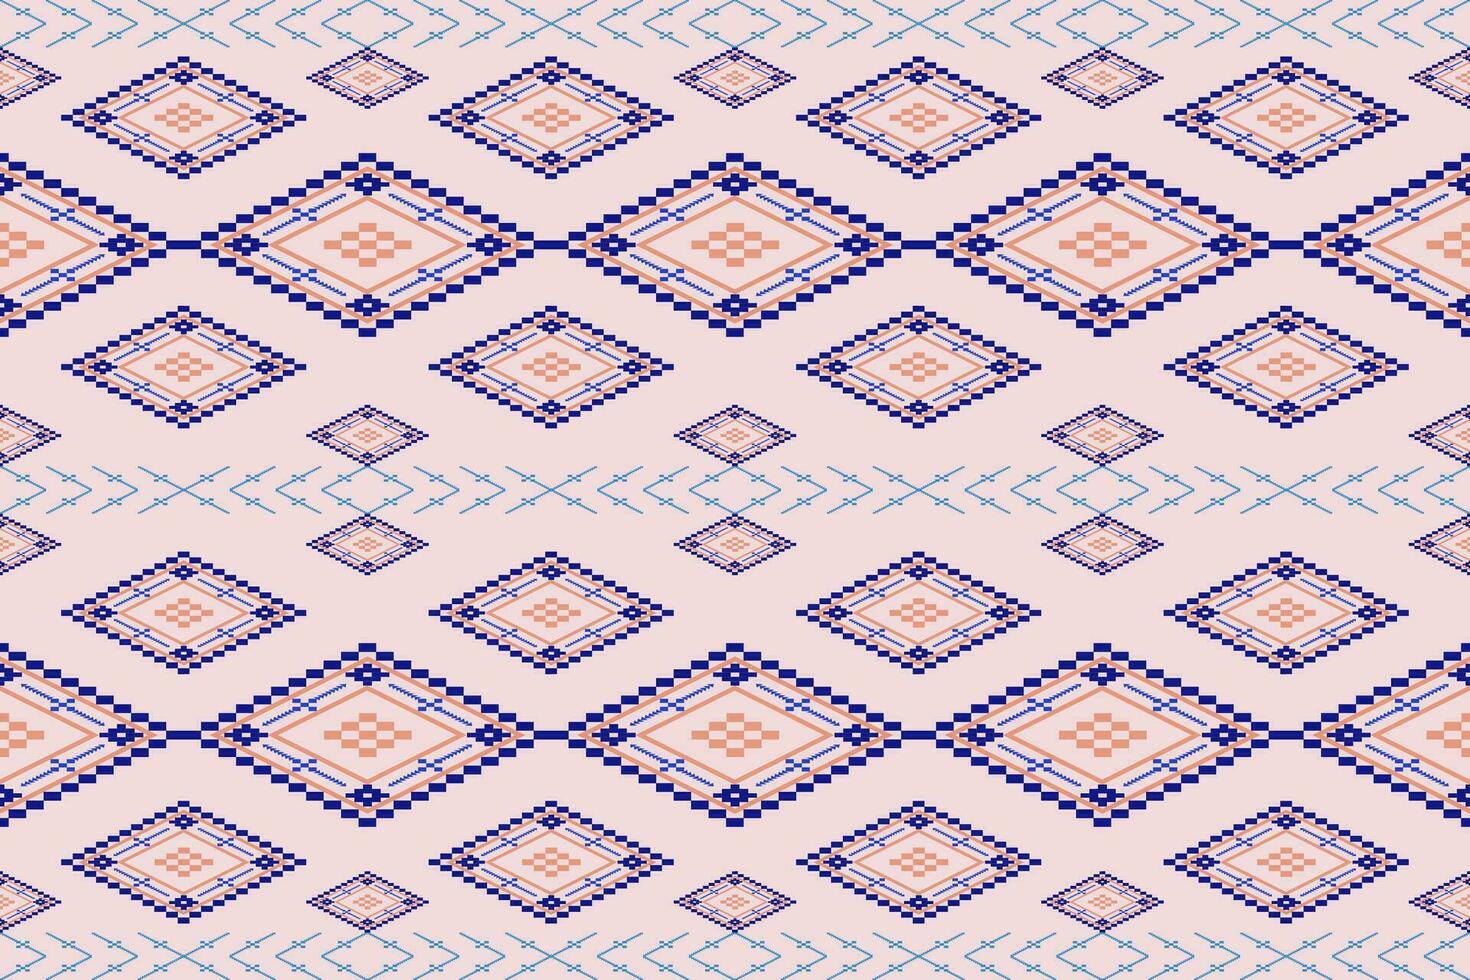 geometrisch ethnisch Muster Vektor Illustration hintergrund.nahtlos Muster traditionell.bunt ethnisch Musterdesign zum Hintergrund, Tapete, Batik, Stoff, Teppich, Kleidung, Verpackung, Textil.